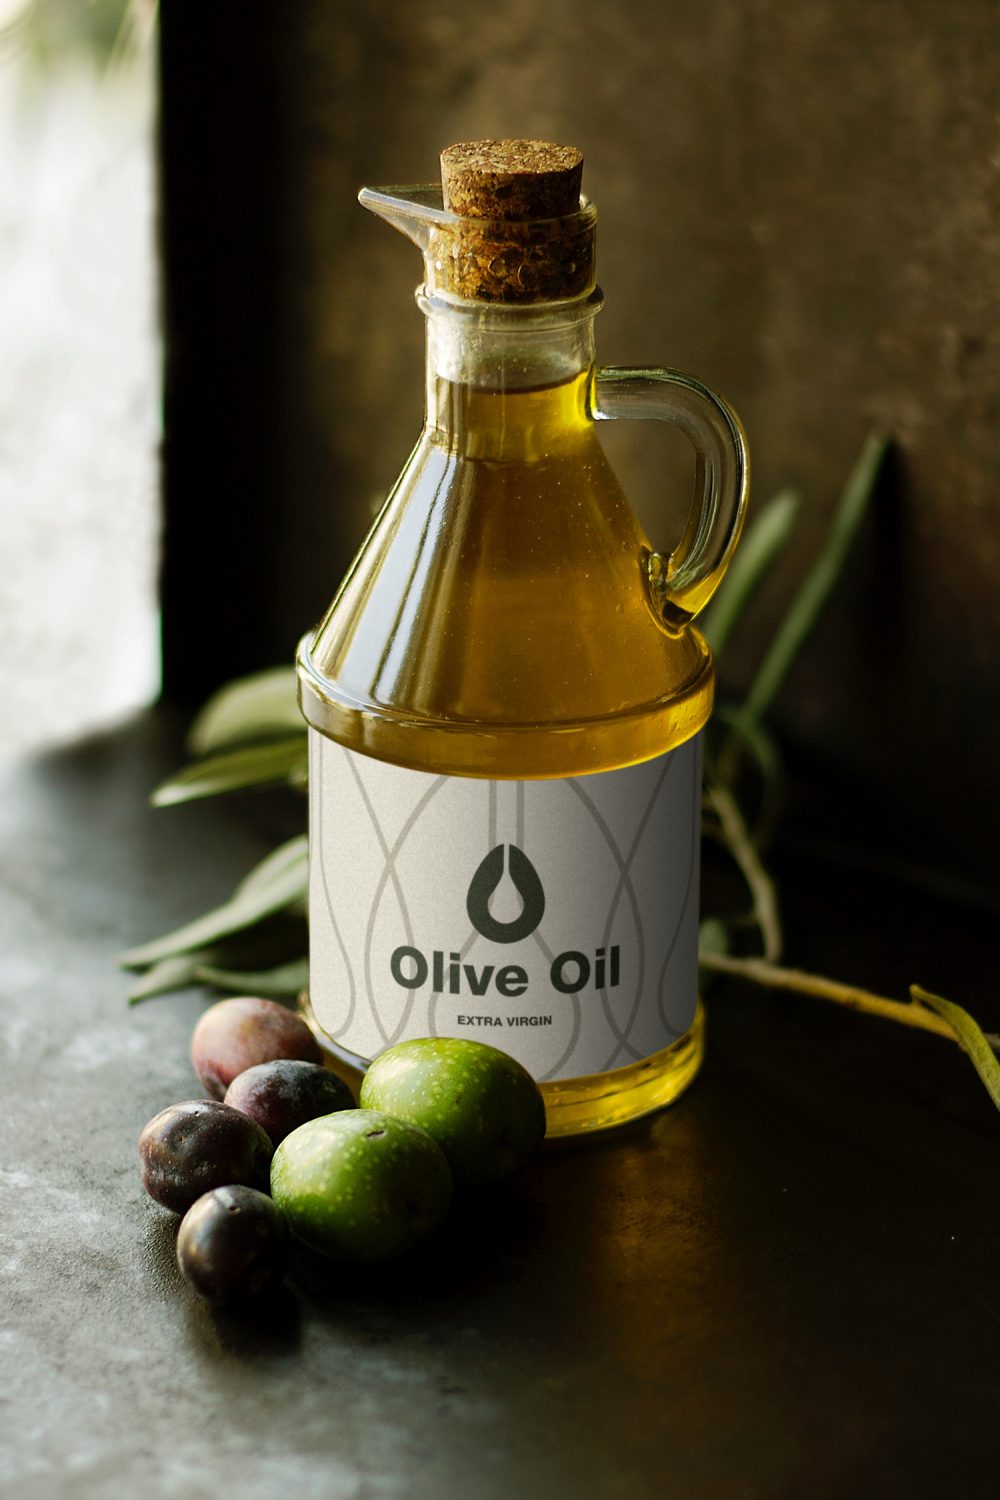 Olive Oil Bottle Mockup